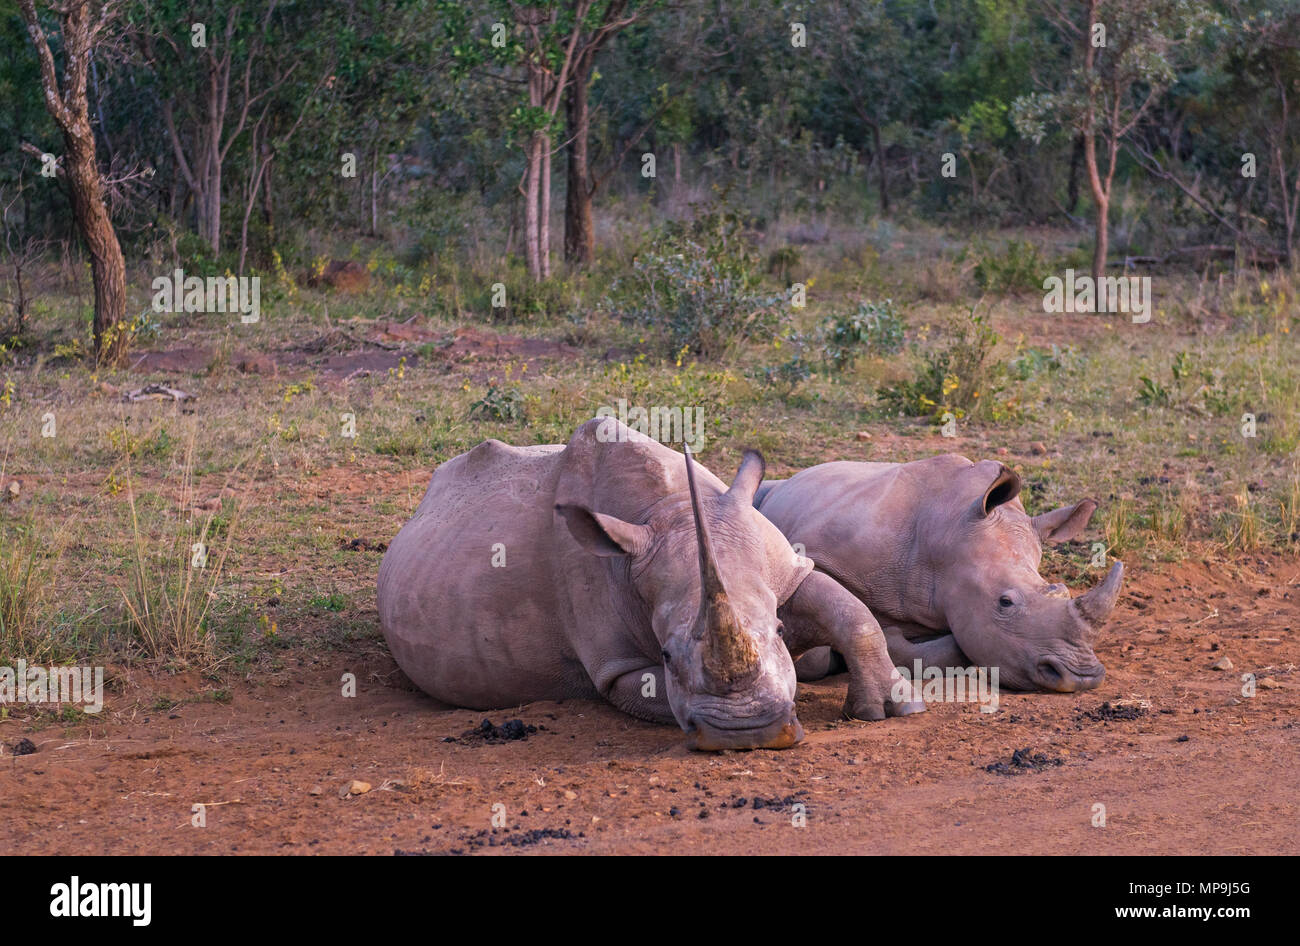 Un adulte rhinocéros blanc (Ceratotherium simum) avec bébé dans la savane africaine à l'intérieur de la réserve de chasse, Entabeni province du Limpopo, Afrique du Sud. Banque D'Images